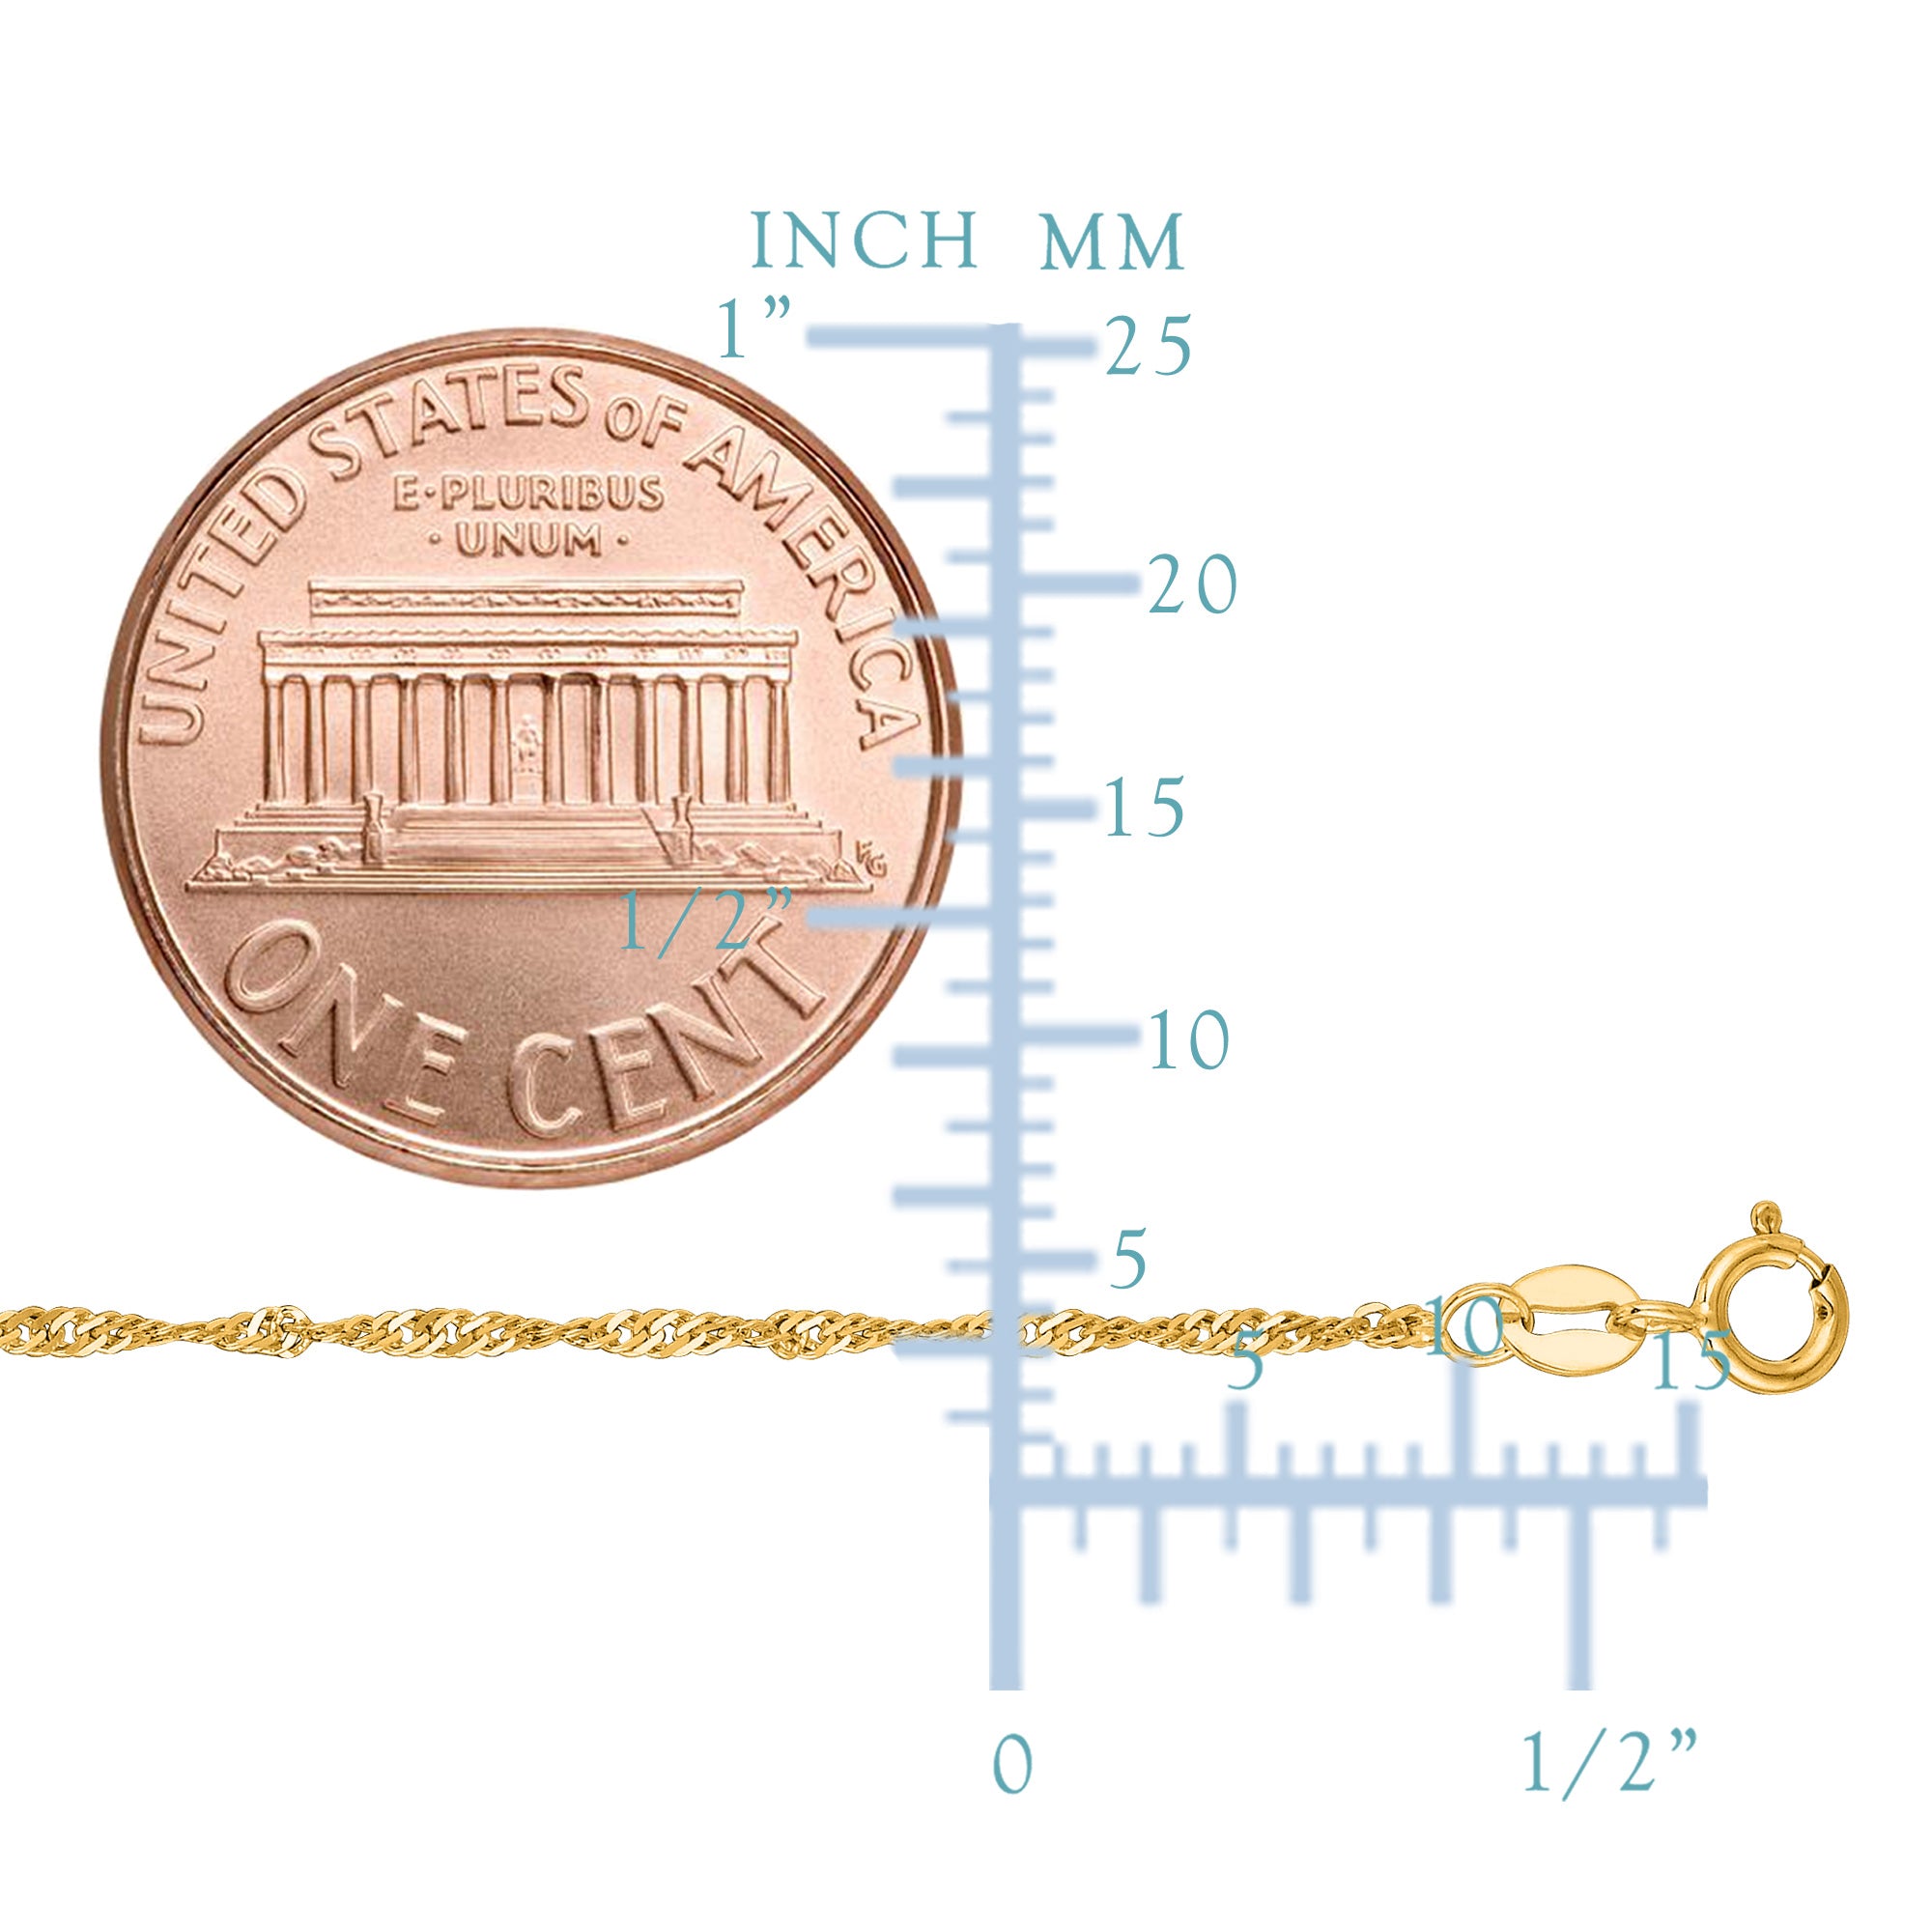 14k gult guld Singapore Chain Halsband, 1,5 mm fina designersmycken för män och kvinnor